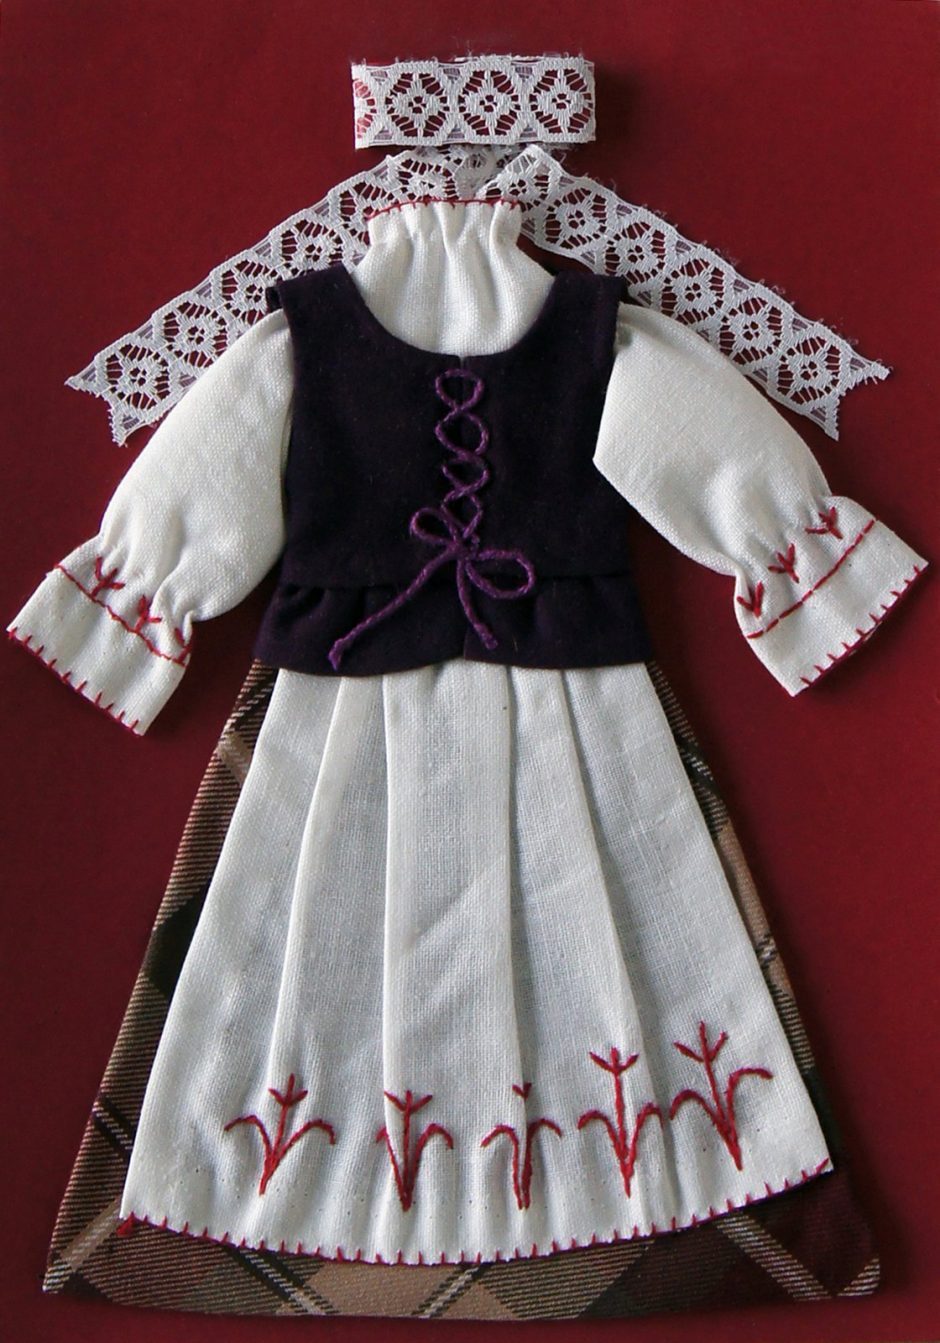 Ištyrė skirtumus: kiekviename Lietuvos regione – savitas tautinis kostiumas